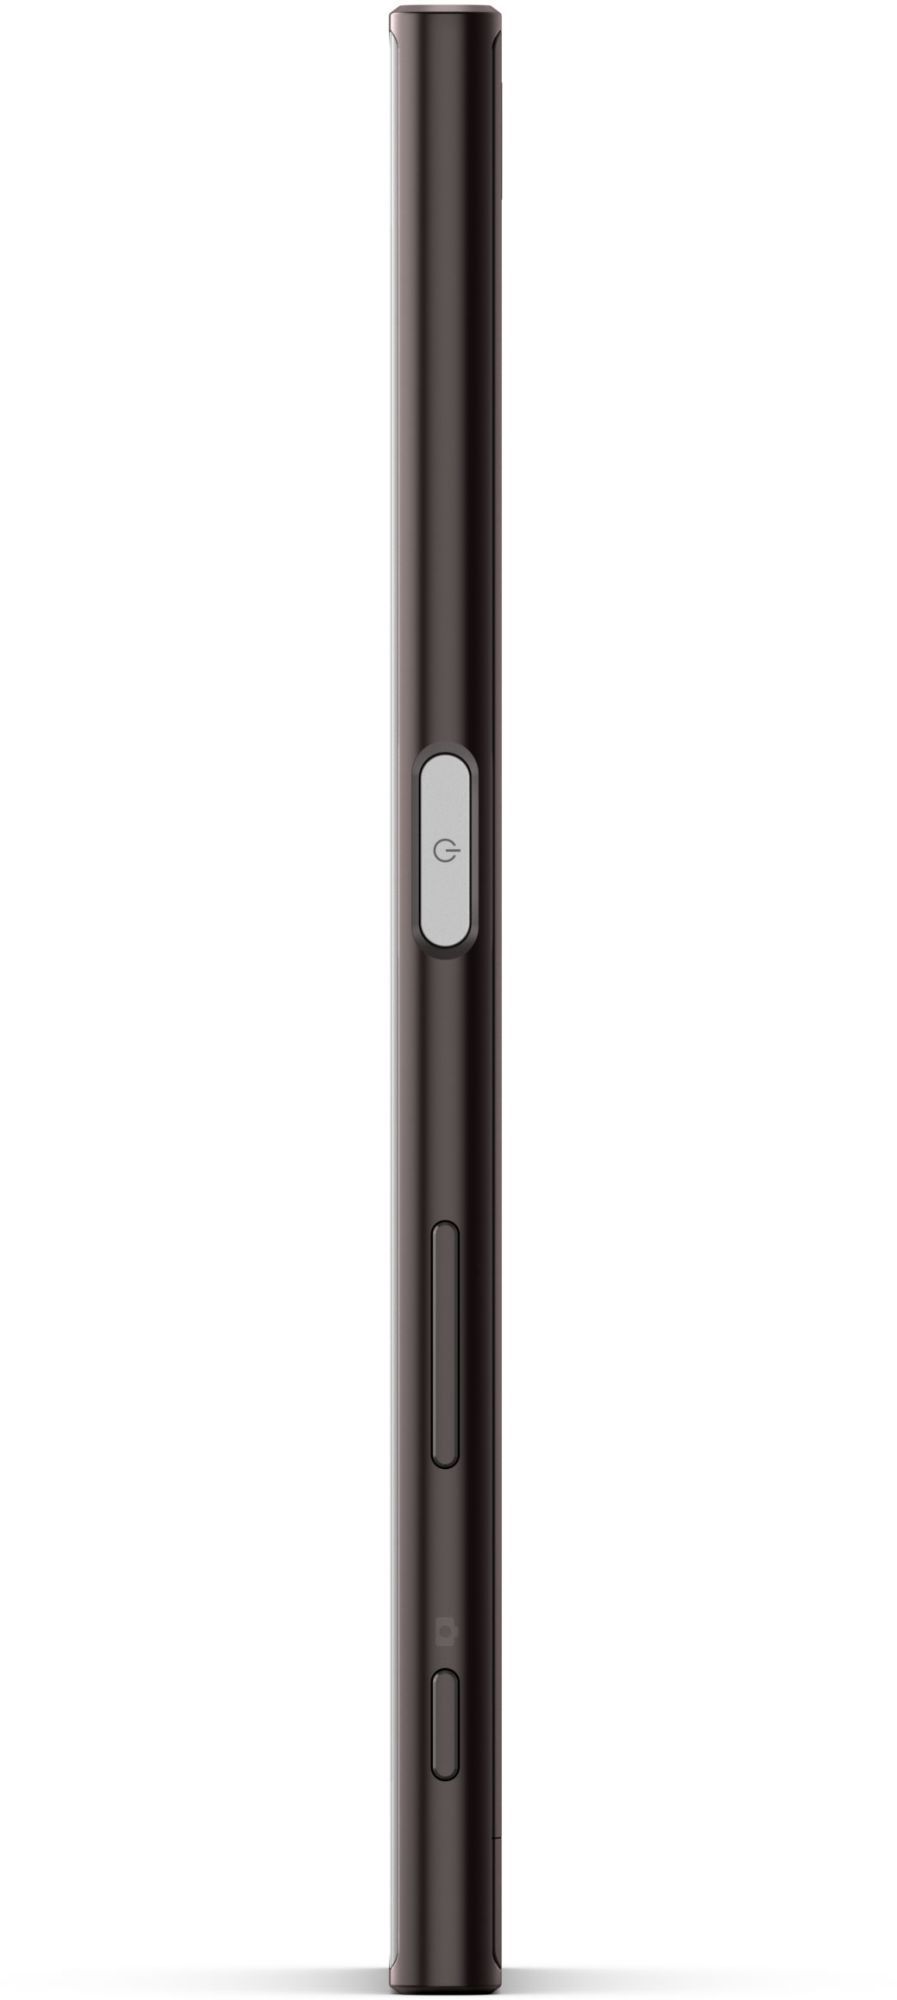 Sony Xperia XZ F8331